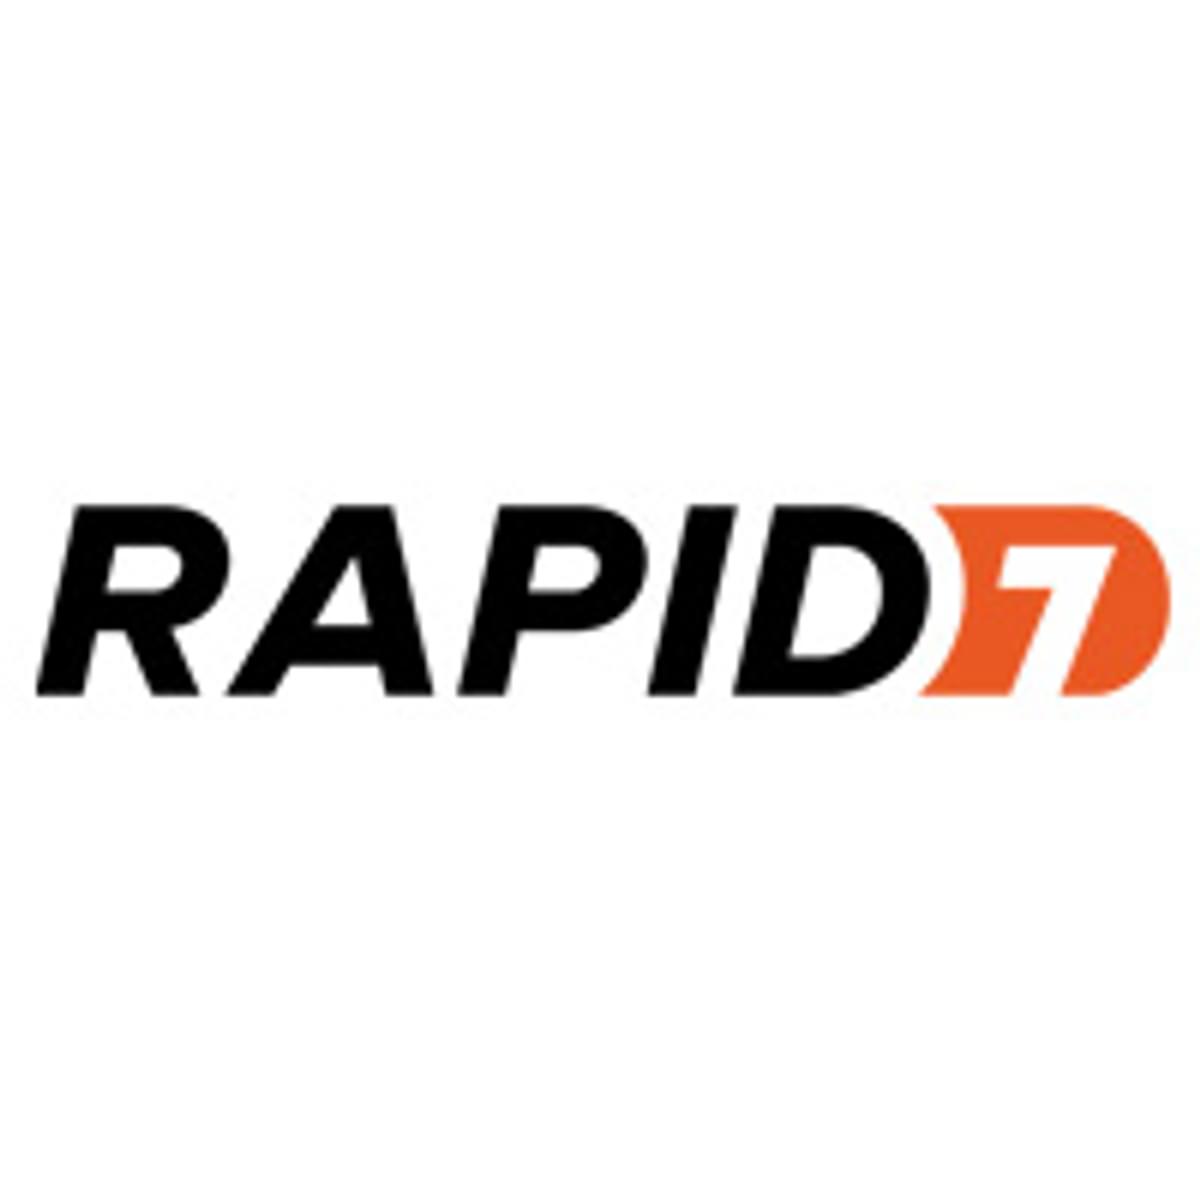 Rapid7 koopt Kubernetes specialist Alcide image